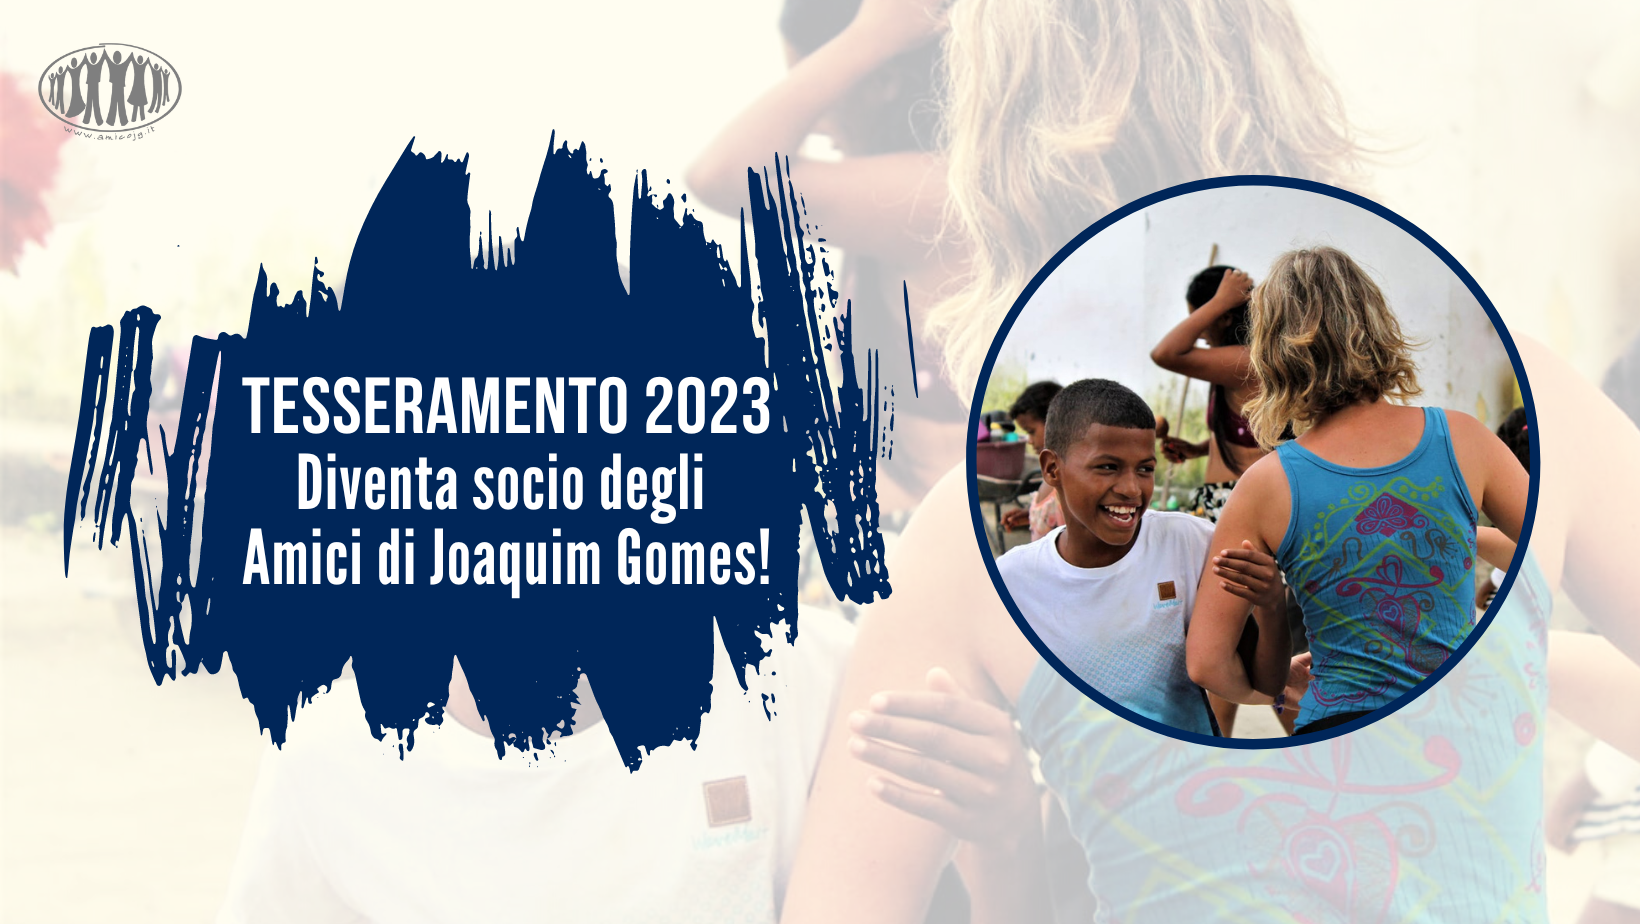 Tesseramento 2023: supporta gli Amici di Joaquim Gomes diventando socio!